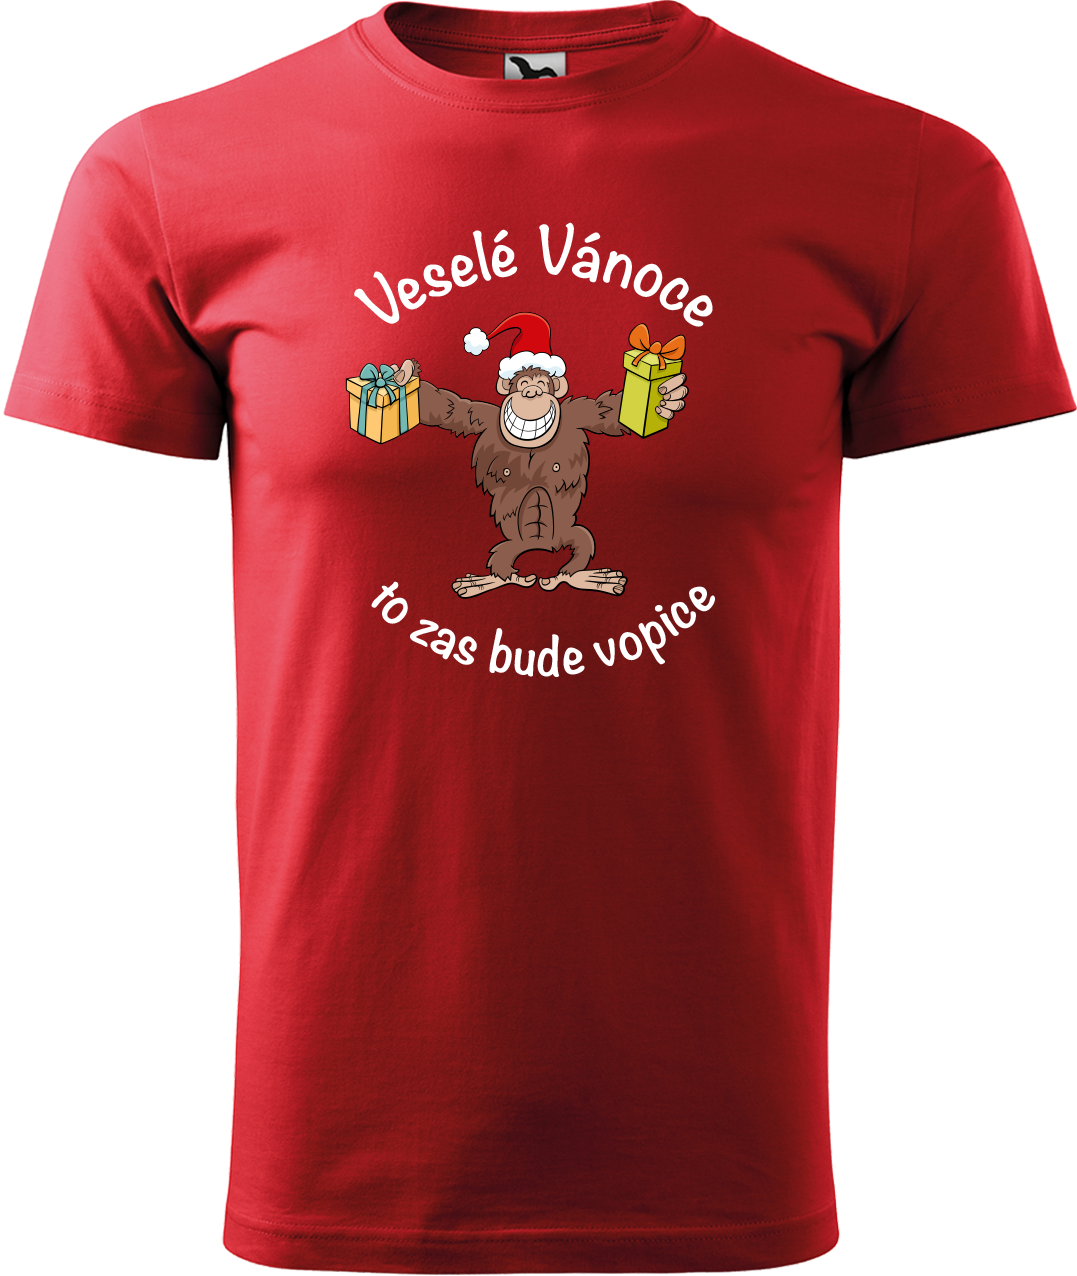 Pánské vánoční tričko - Veselé Vánoce to zas bude vopice (hnědý opičák) Velikost: L, Barva: Červená (07)